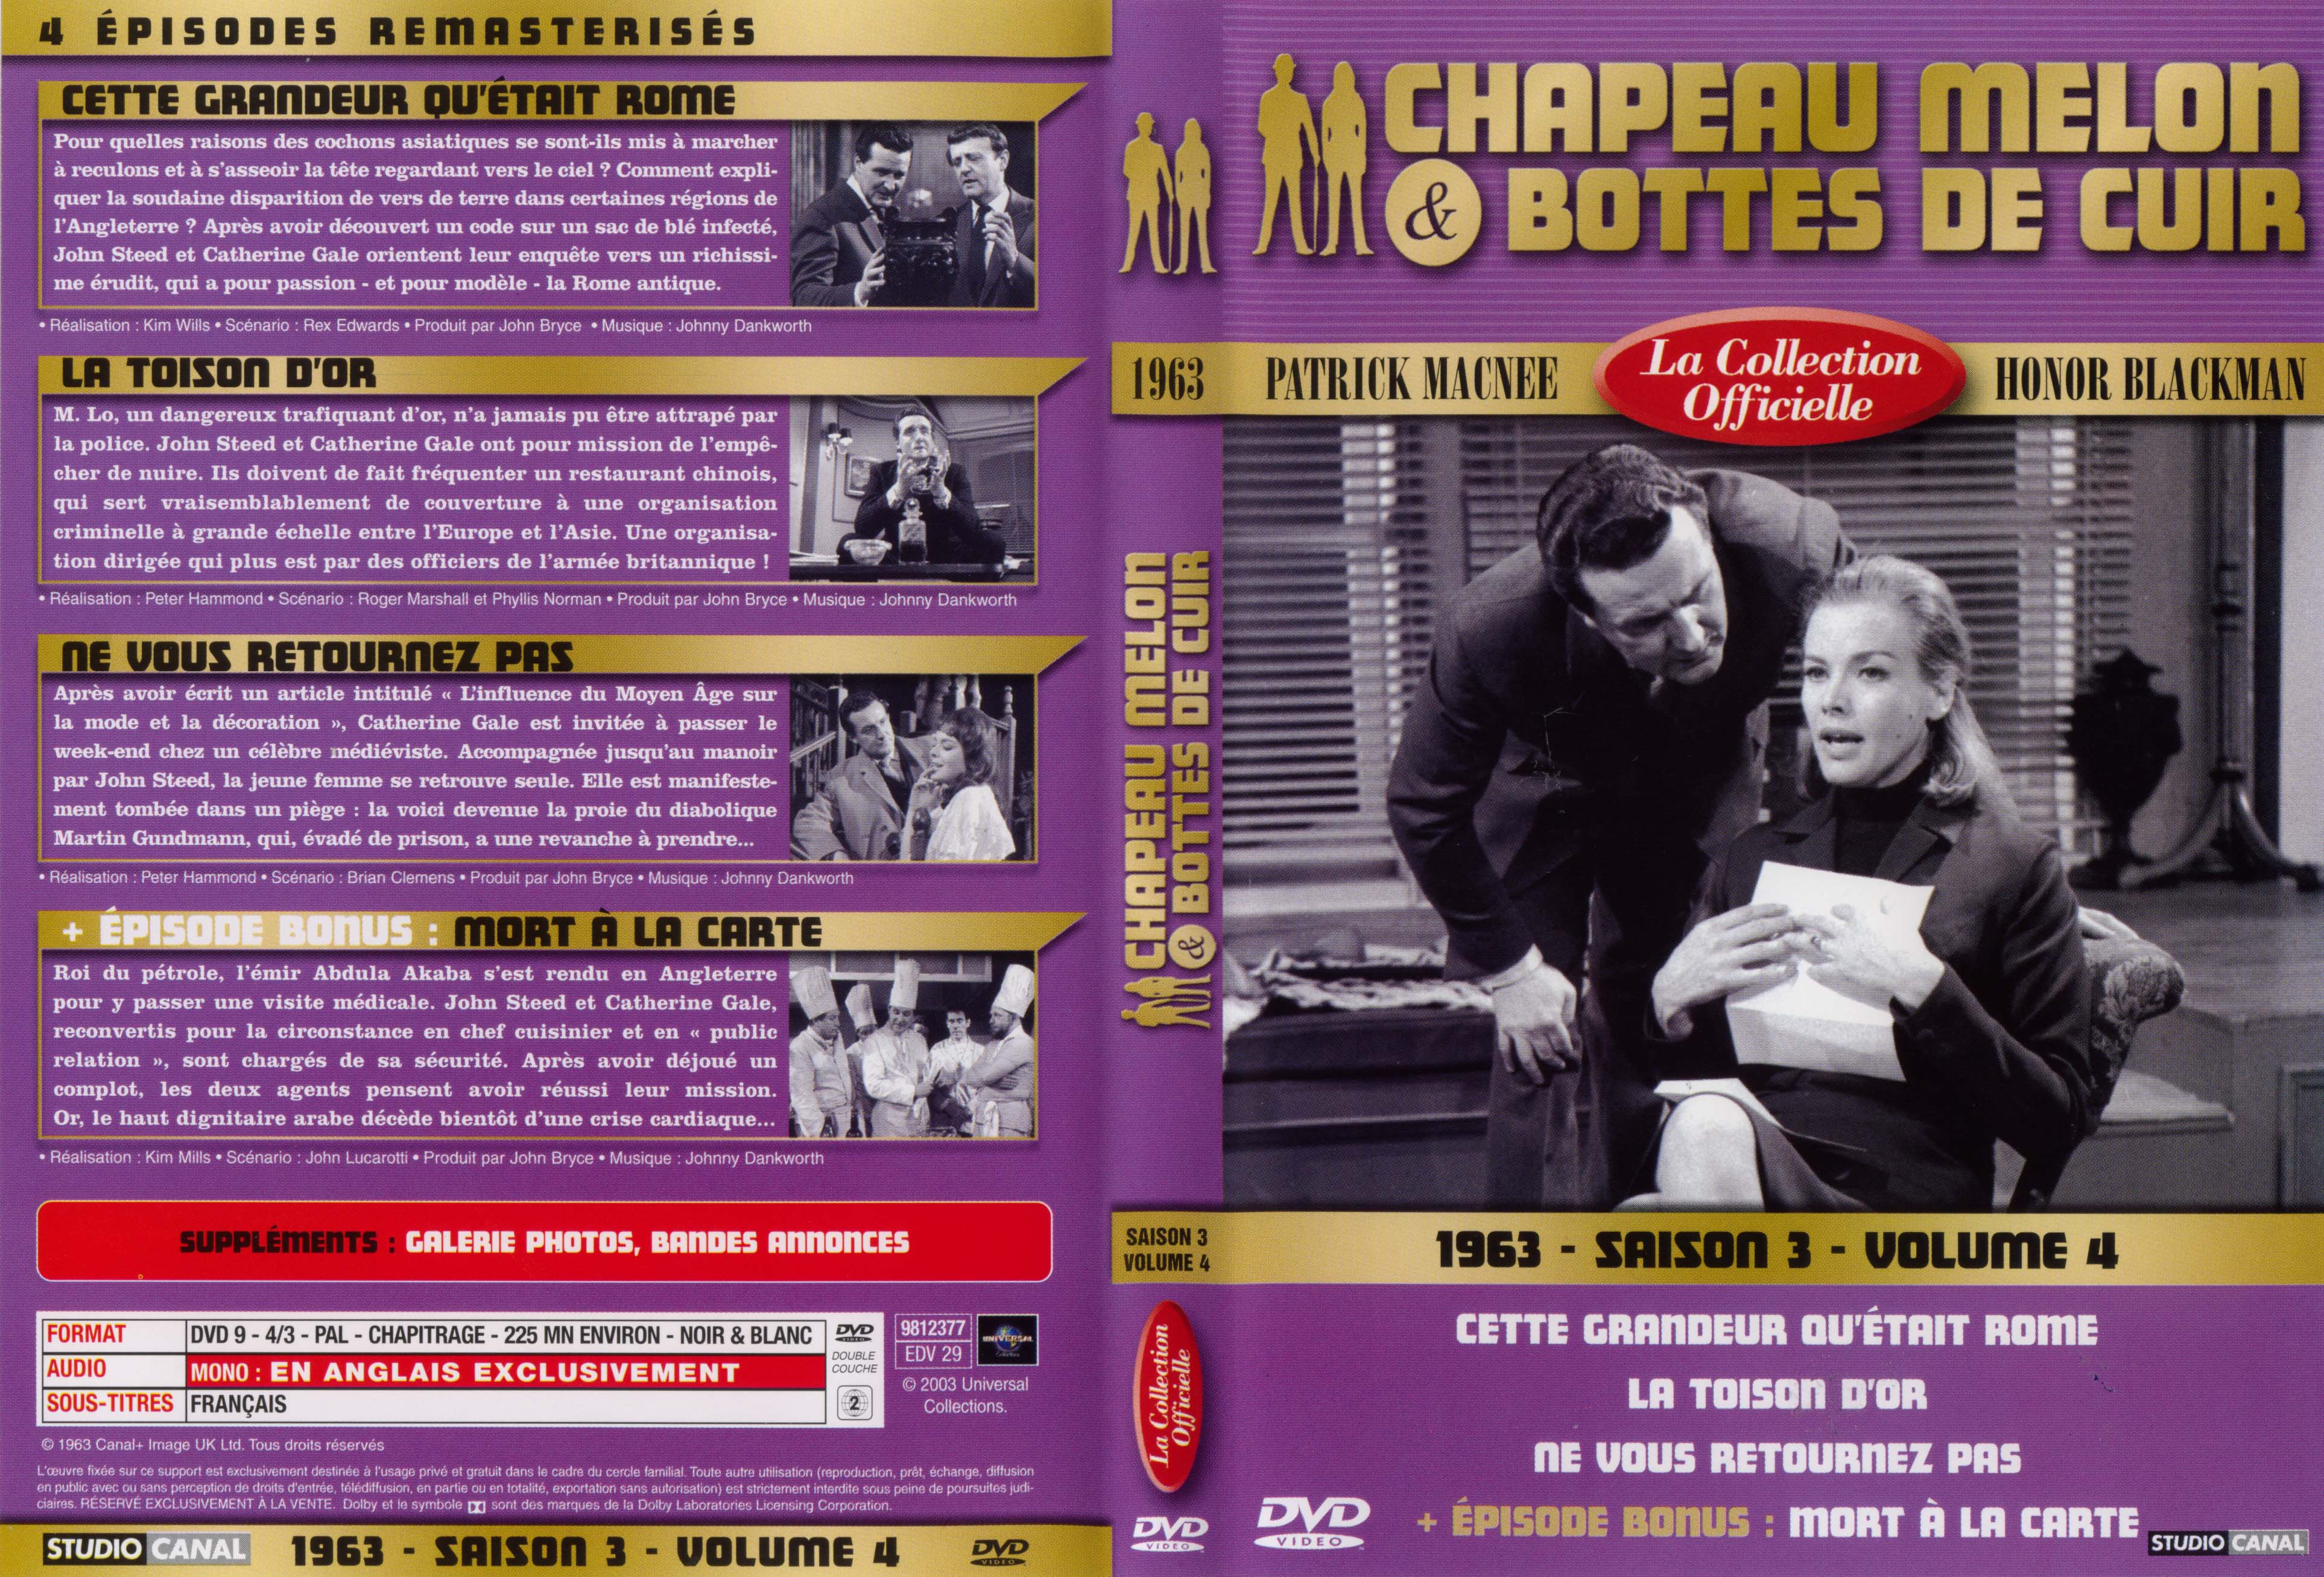 Jaquette DVD Chapeau melon et bottes de cuir 1963 saison 3 vol 4